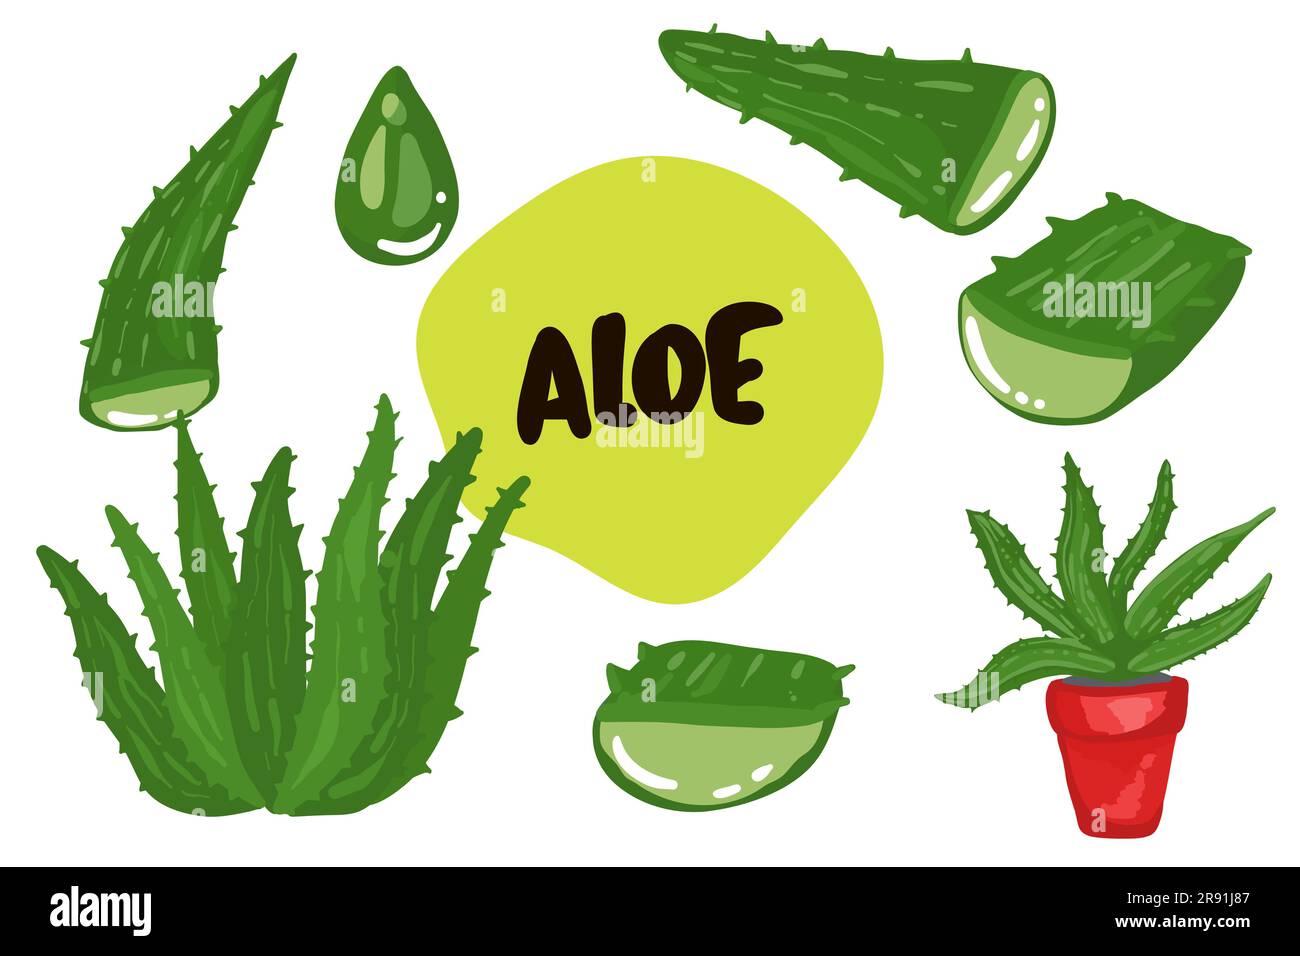 Aloe Vera Planta Medicinal Hojas Esquejes Y Gotas De Jugo Elementos Colección Sobre Fondo 7928